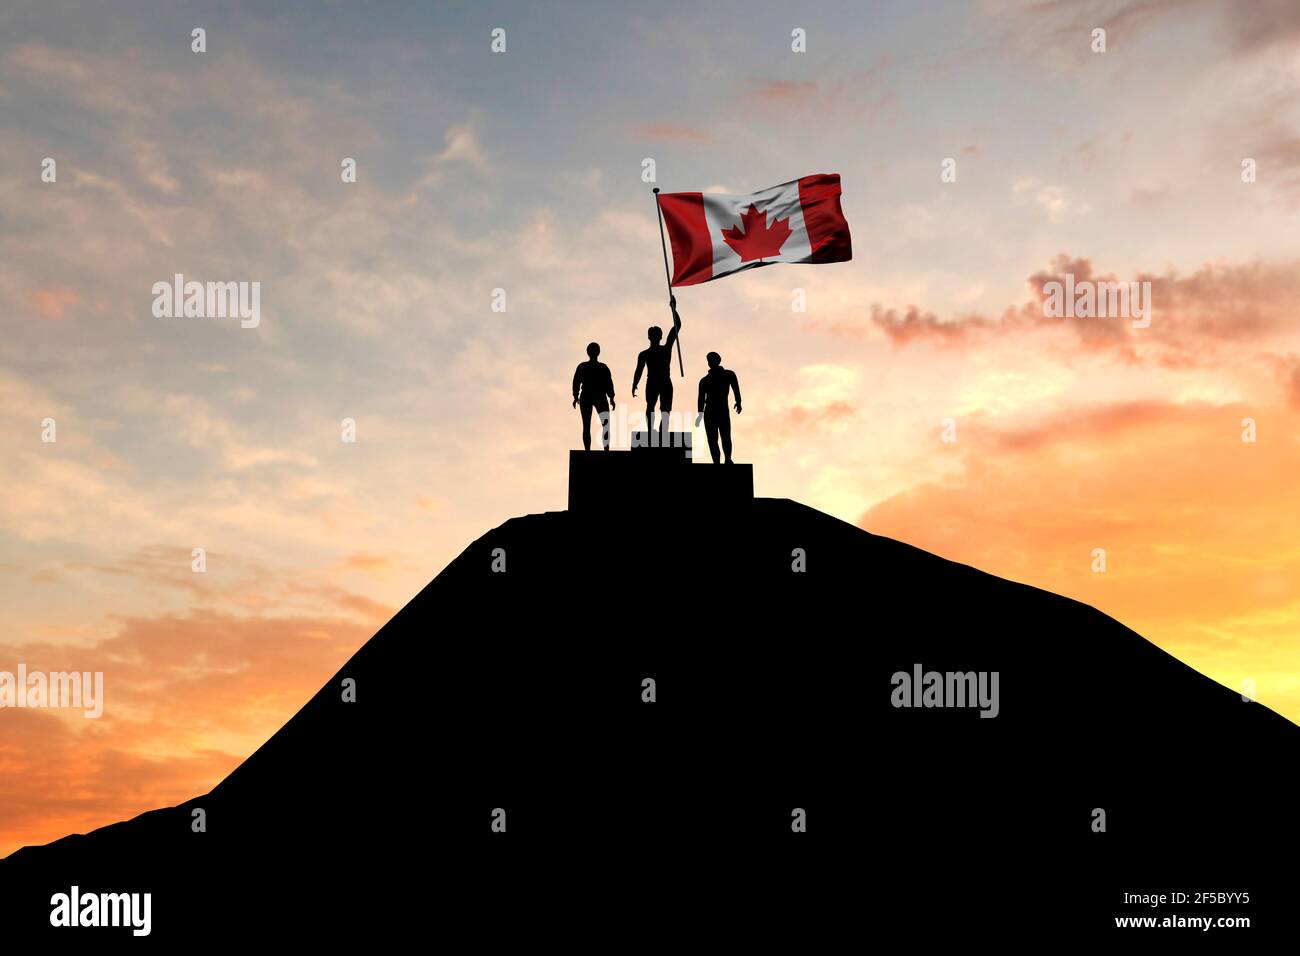 Le drapeau du Canada est sur le podium des gagnants. Rendu 3D Banque D'Images